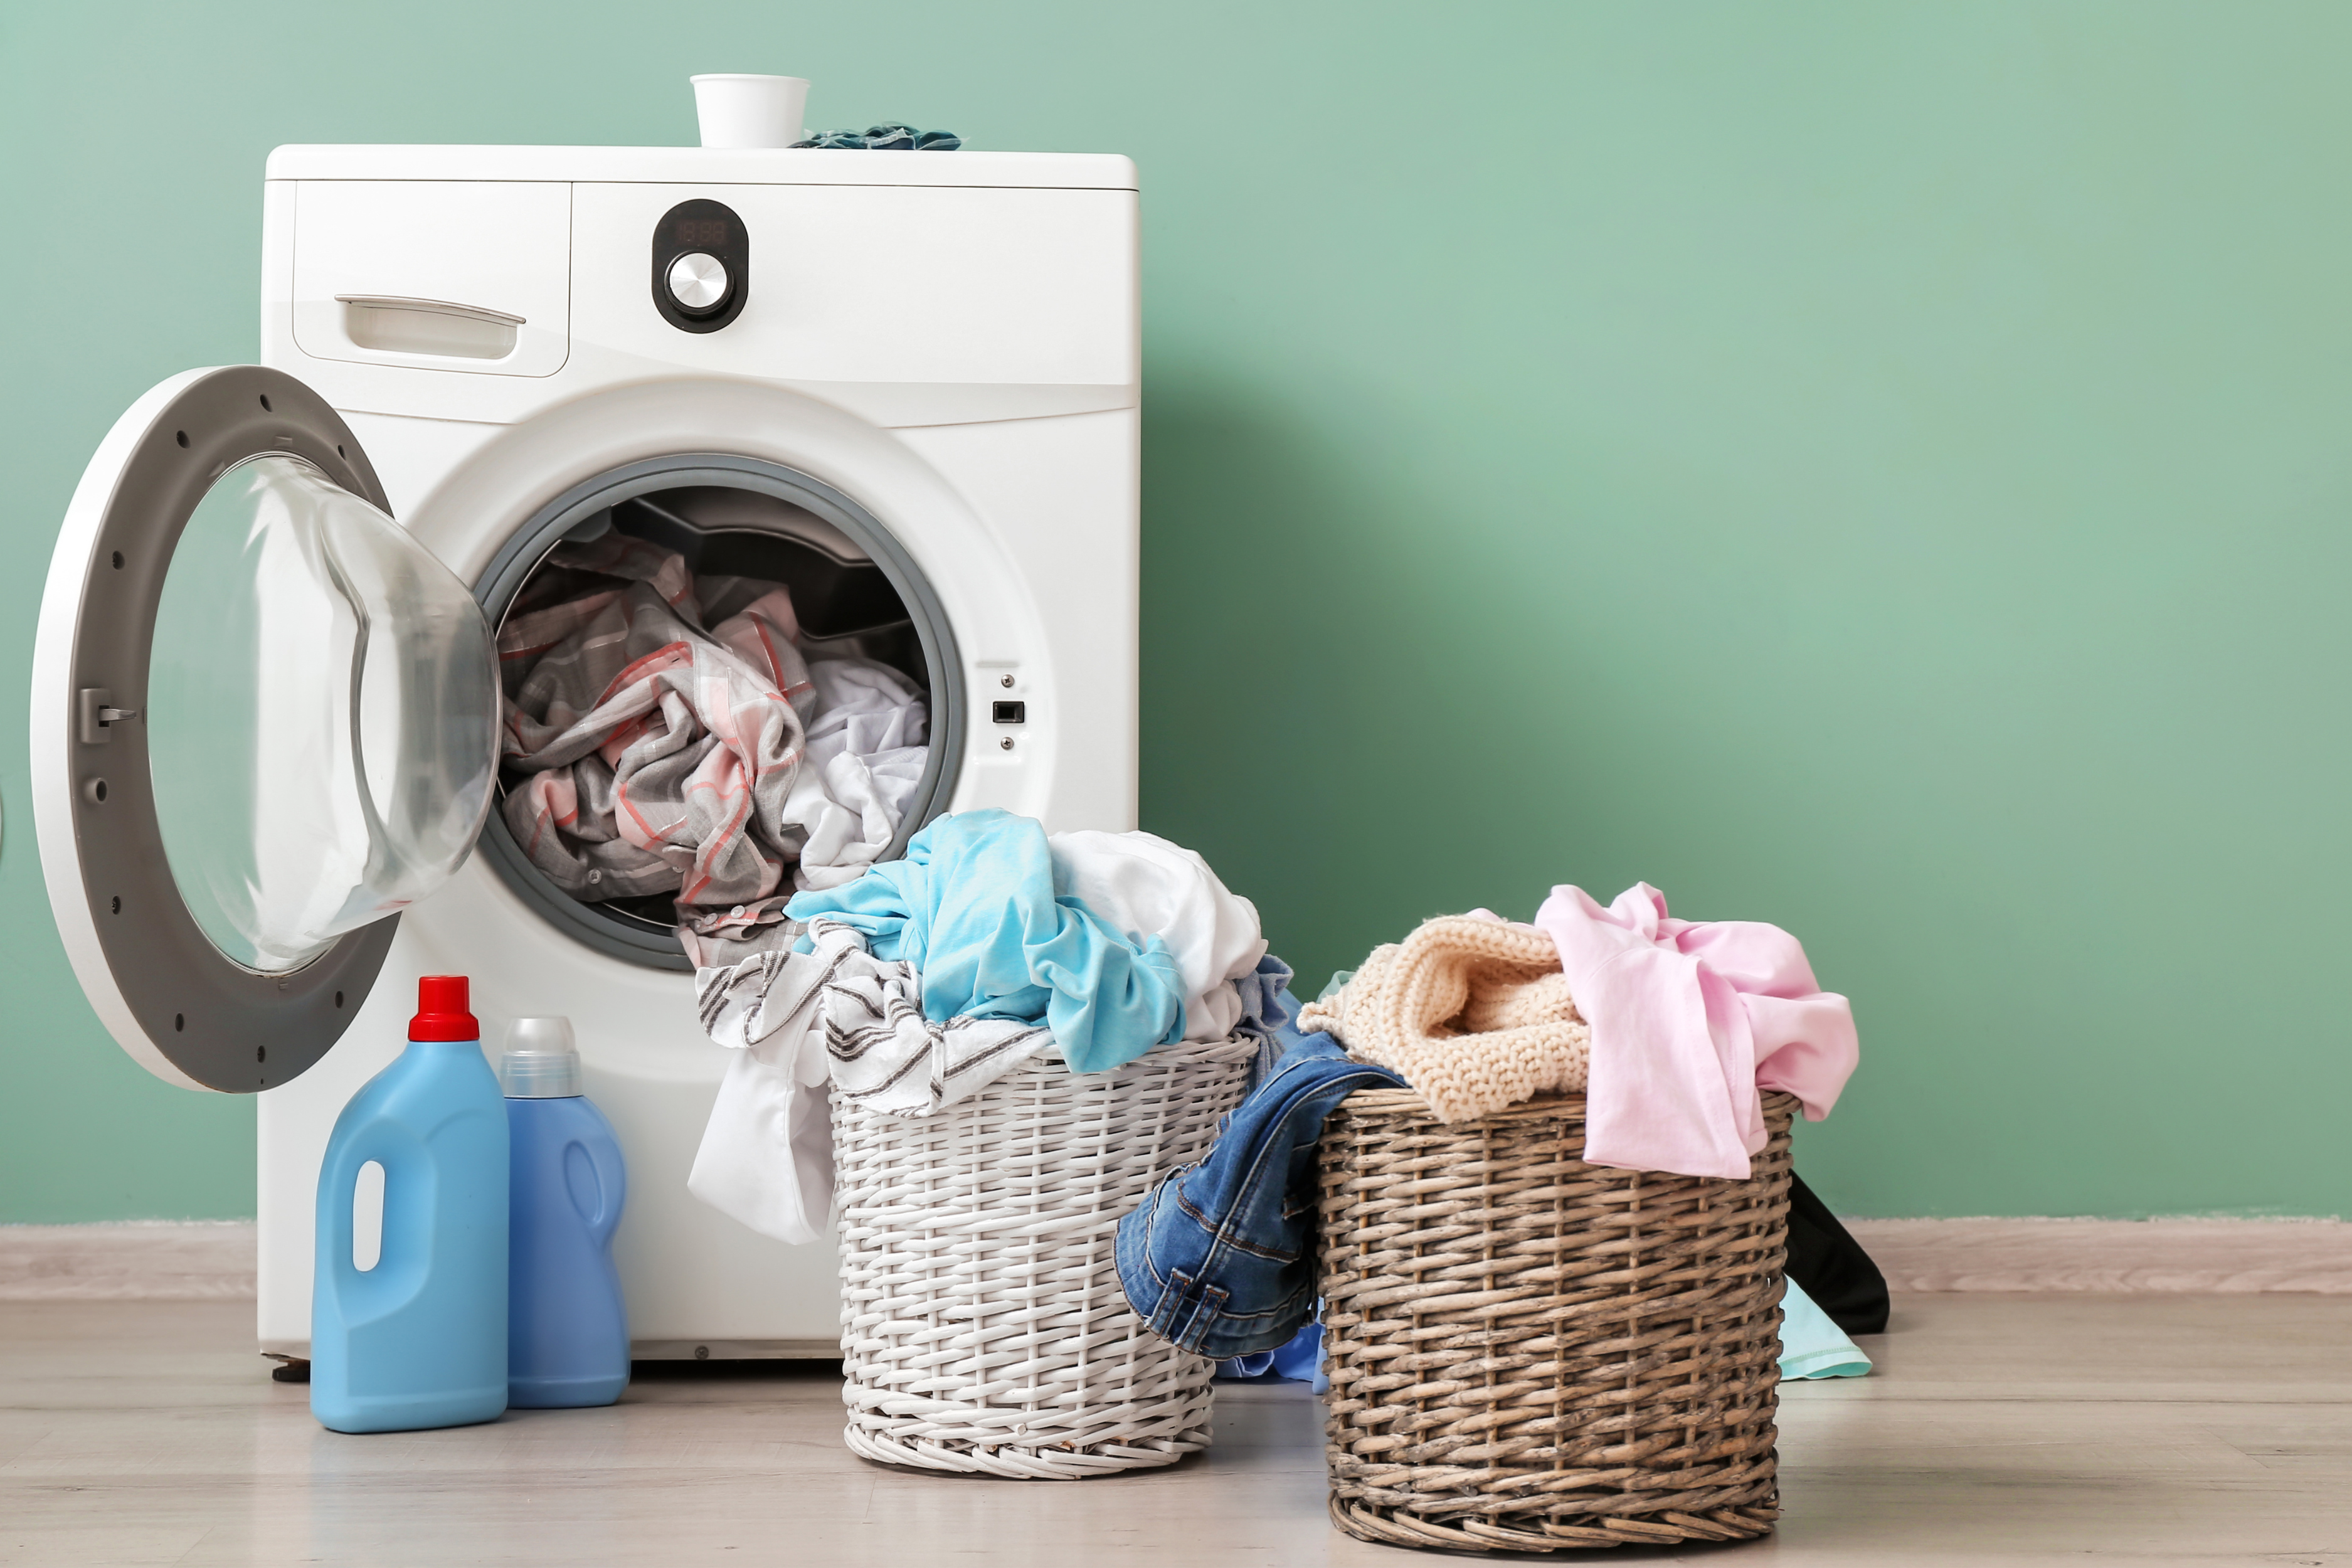 Lavadora junto a un cesto de ropa, resaltando la importancia de secar completamente las prendas para evitar la humedad y el crecimiento de hongos